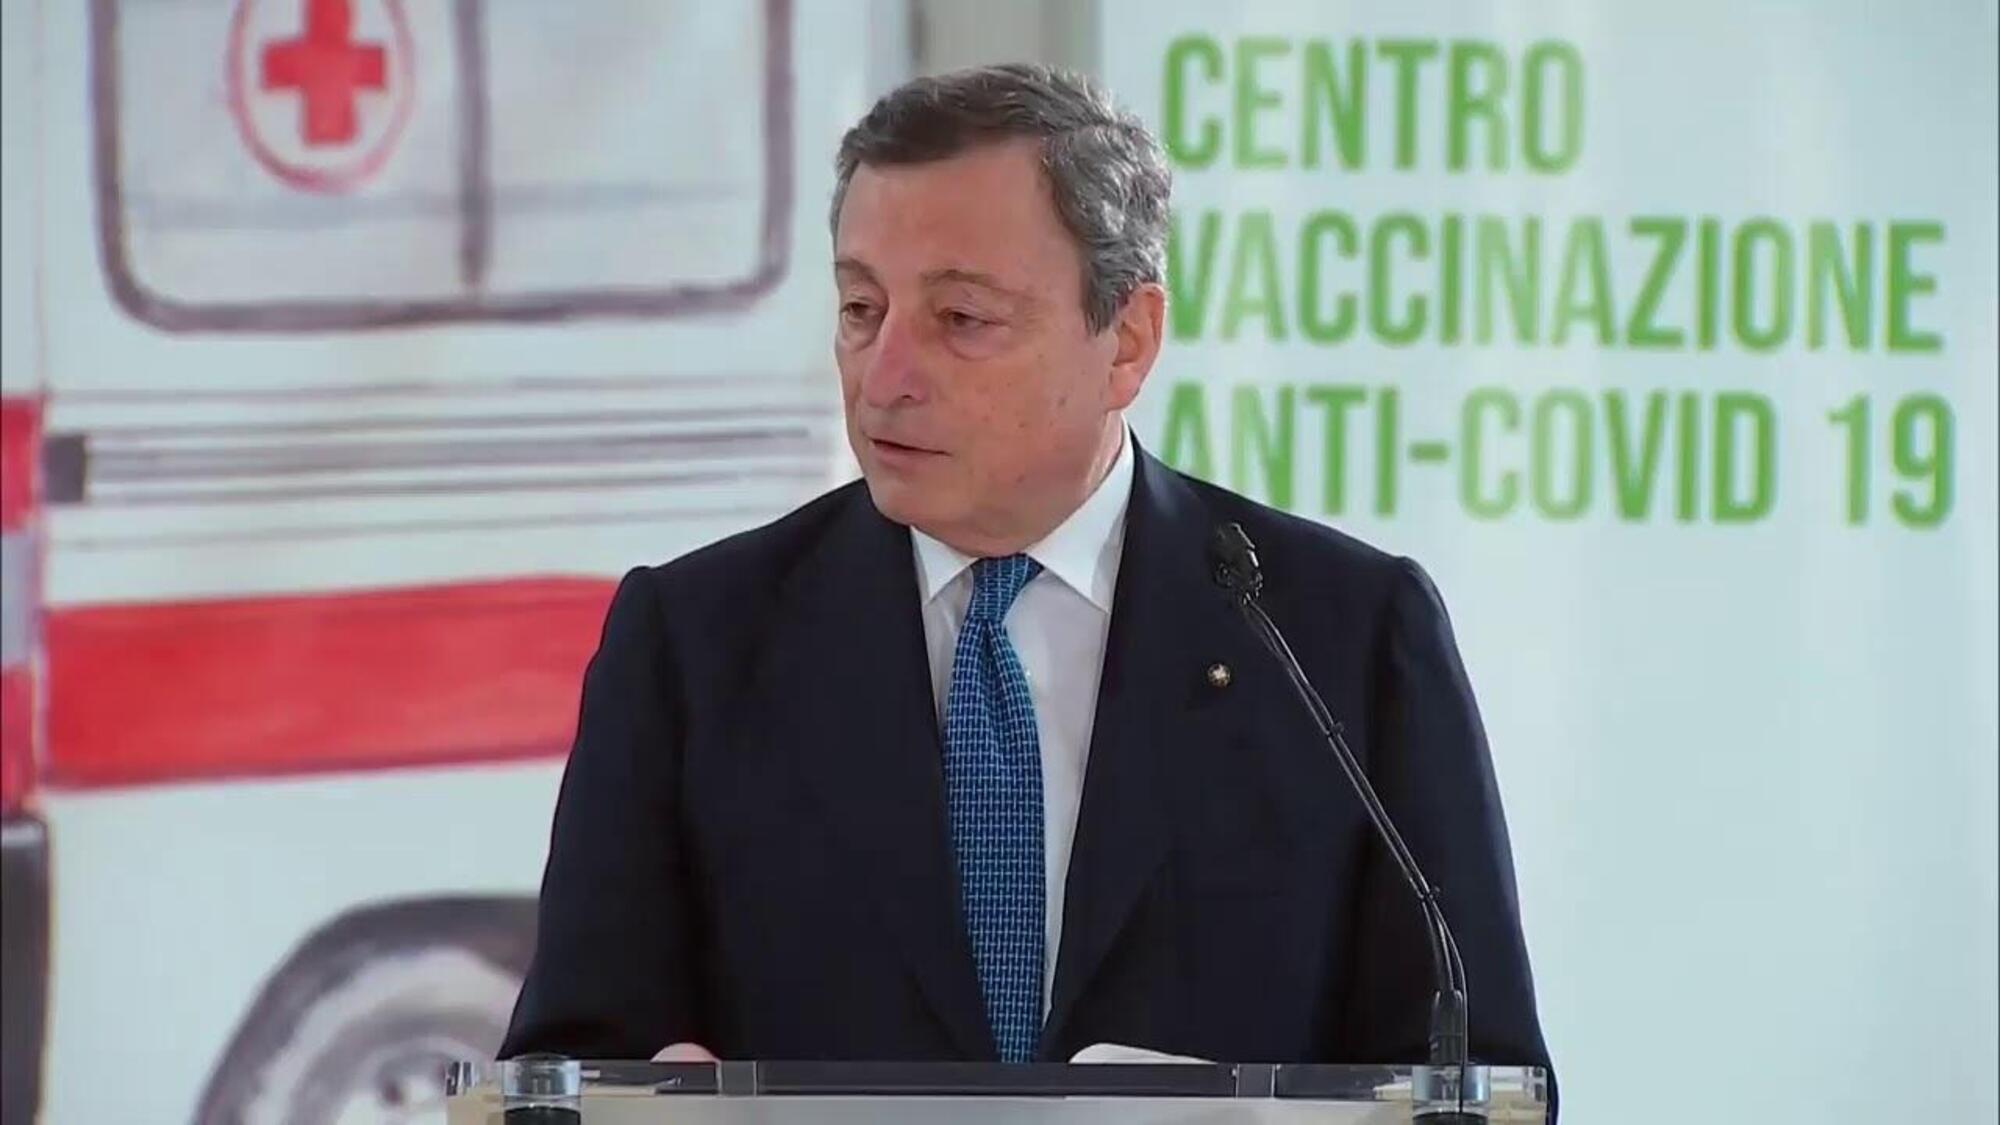 Mario Draghi nel centro vaccinazione di Fiumicino